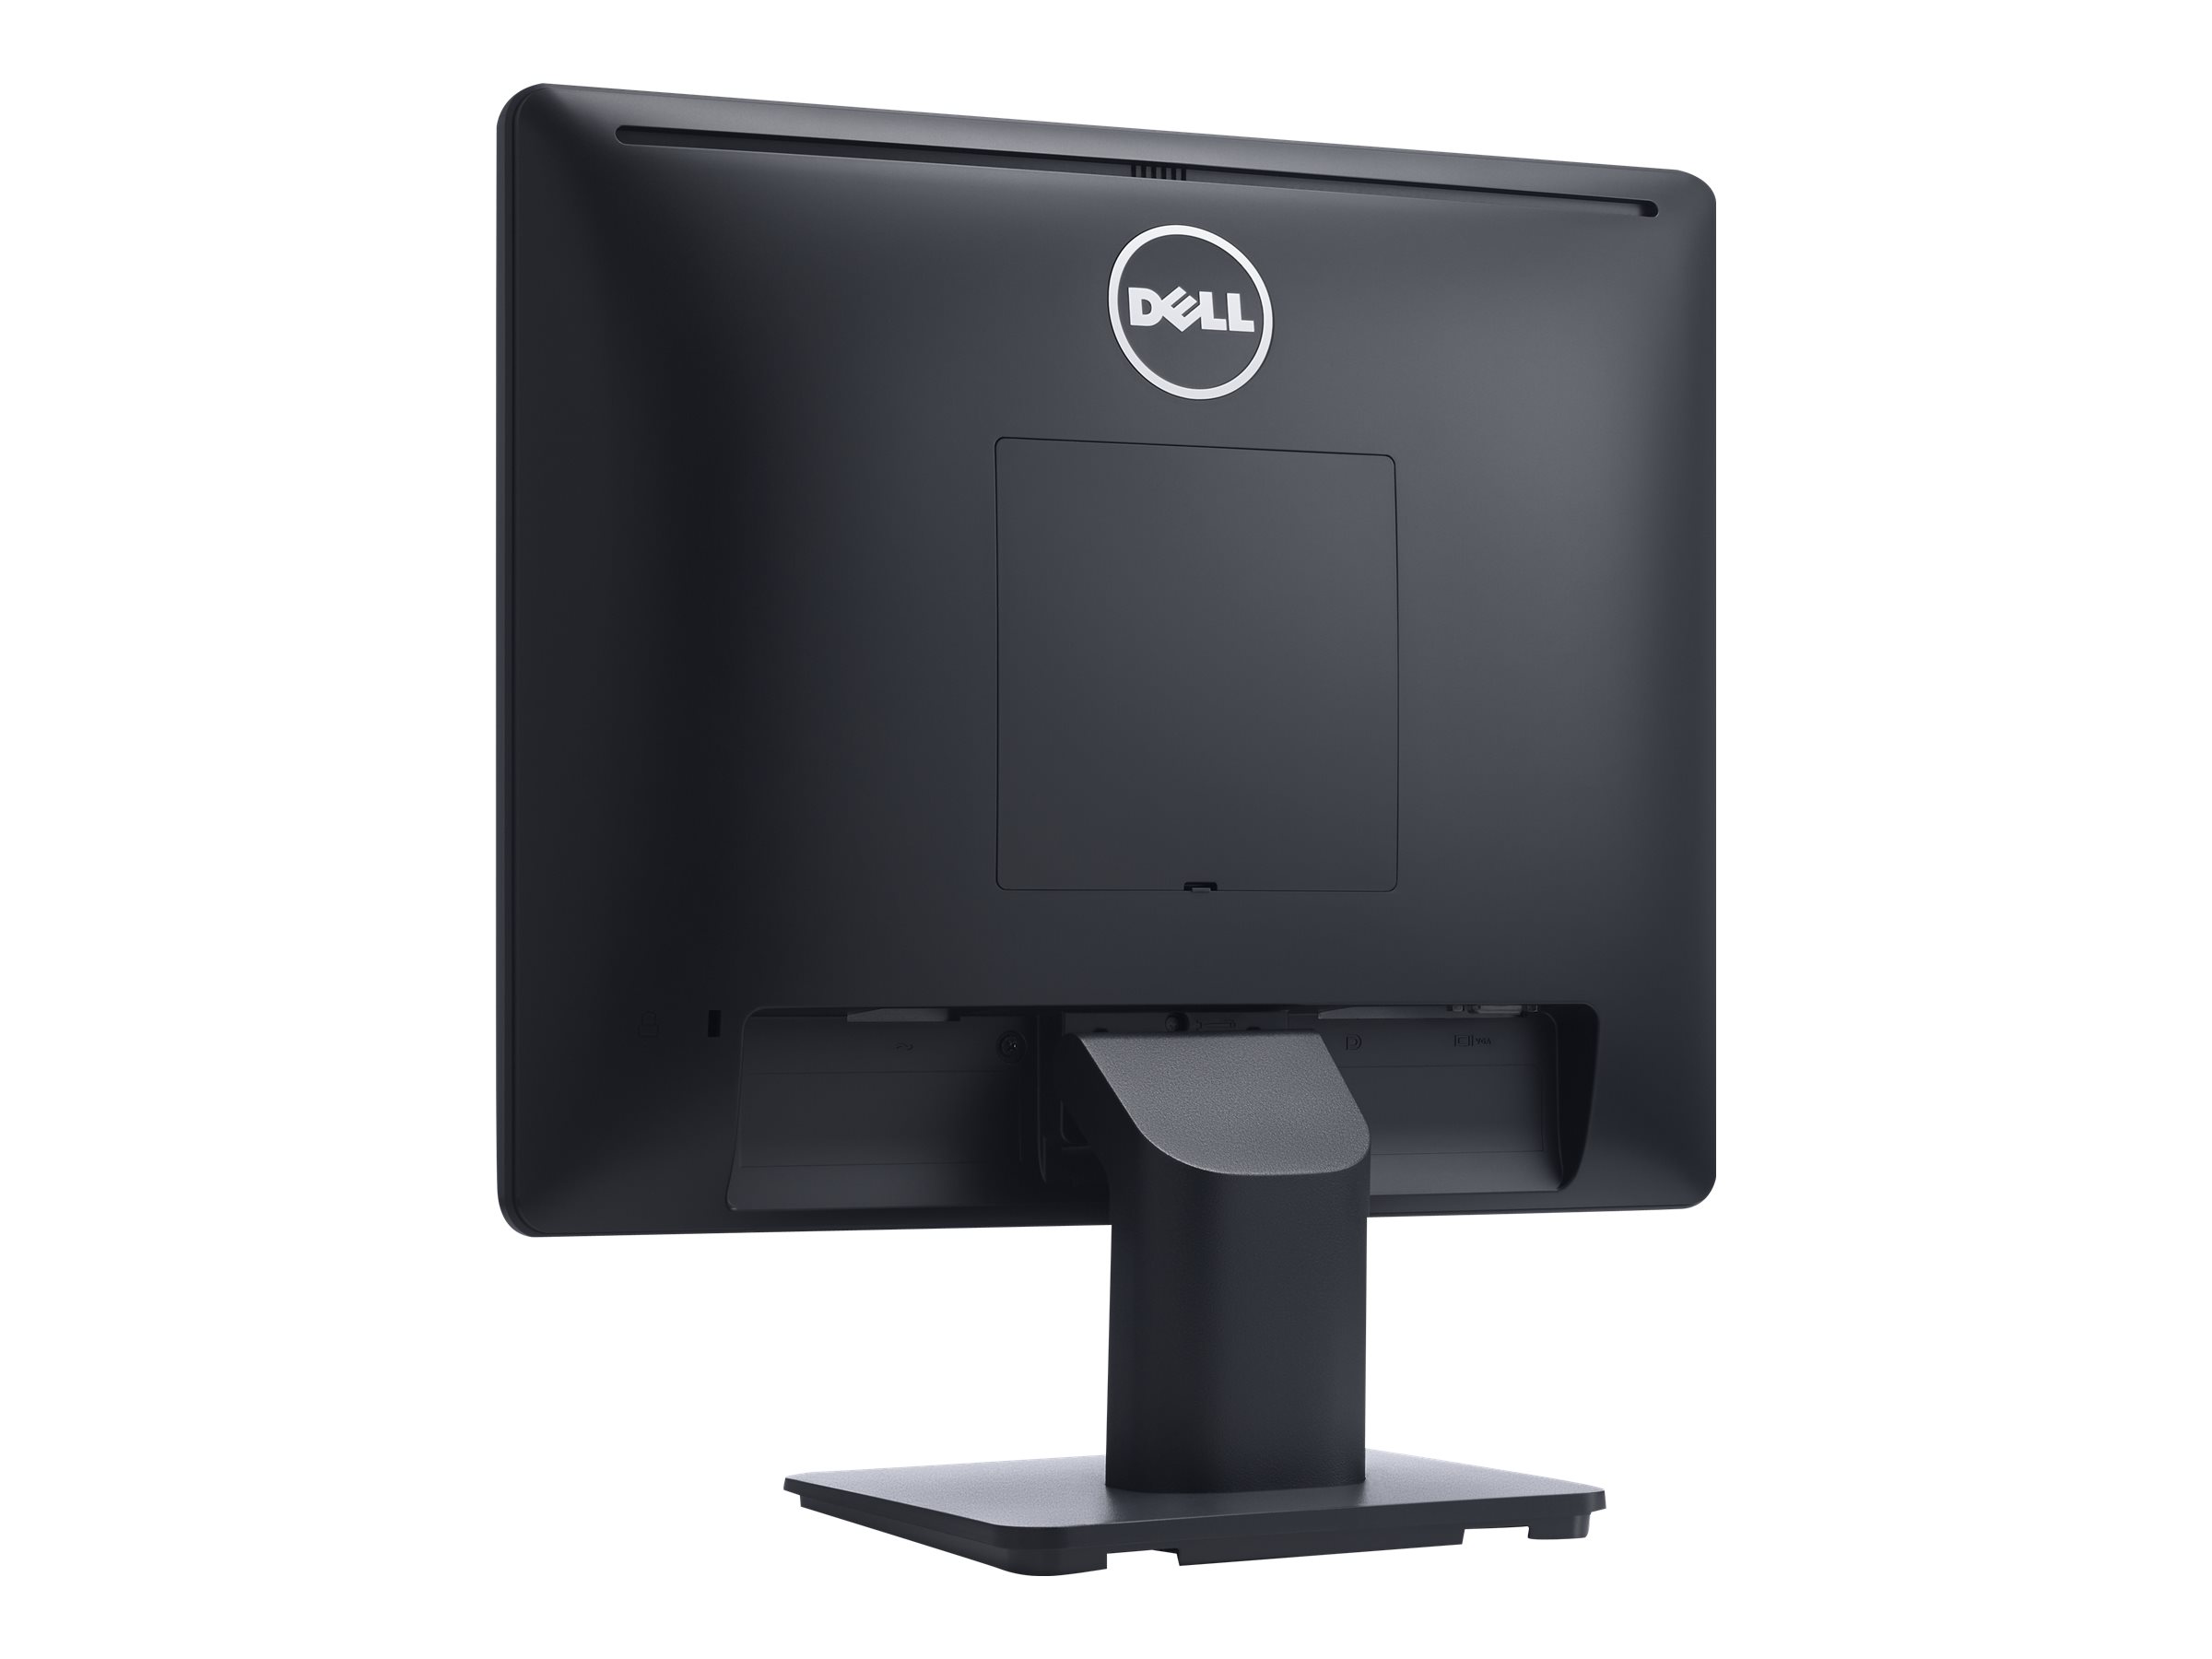 Dell E1715S - LED-Monitor - 43.2 cm (17") - 1280 x 1024 @ 60 Hz - TN - 250 cd/m² - 1000:1 - 5 ms - VGA, DisplayPort - Schwarz - mit 3 Jahre Advanced Exchange-Service